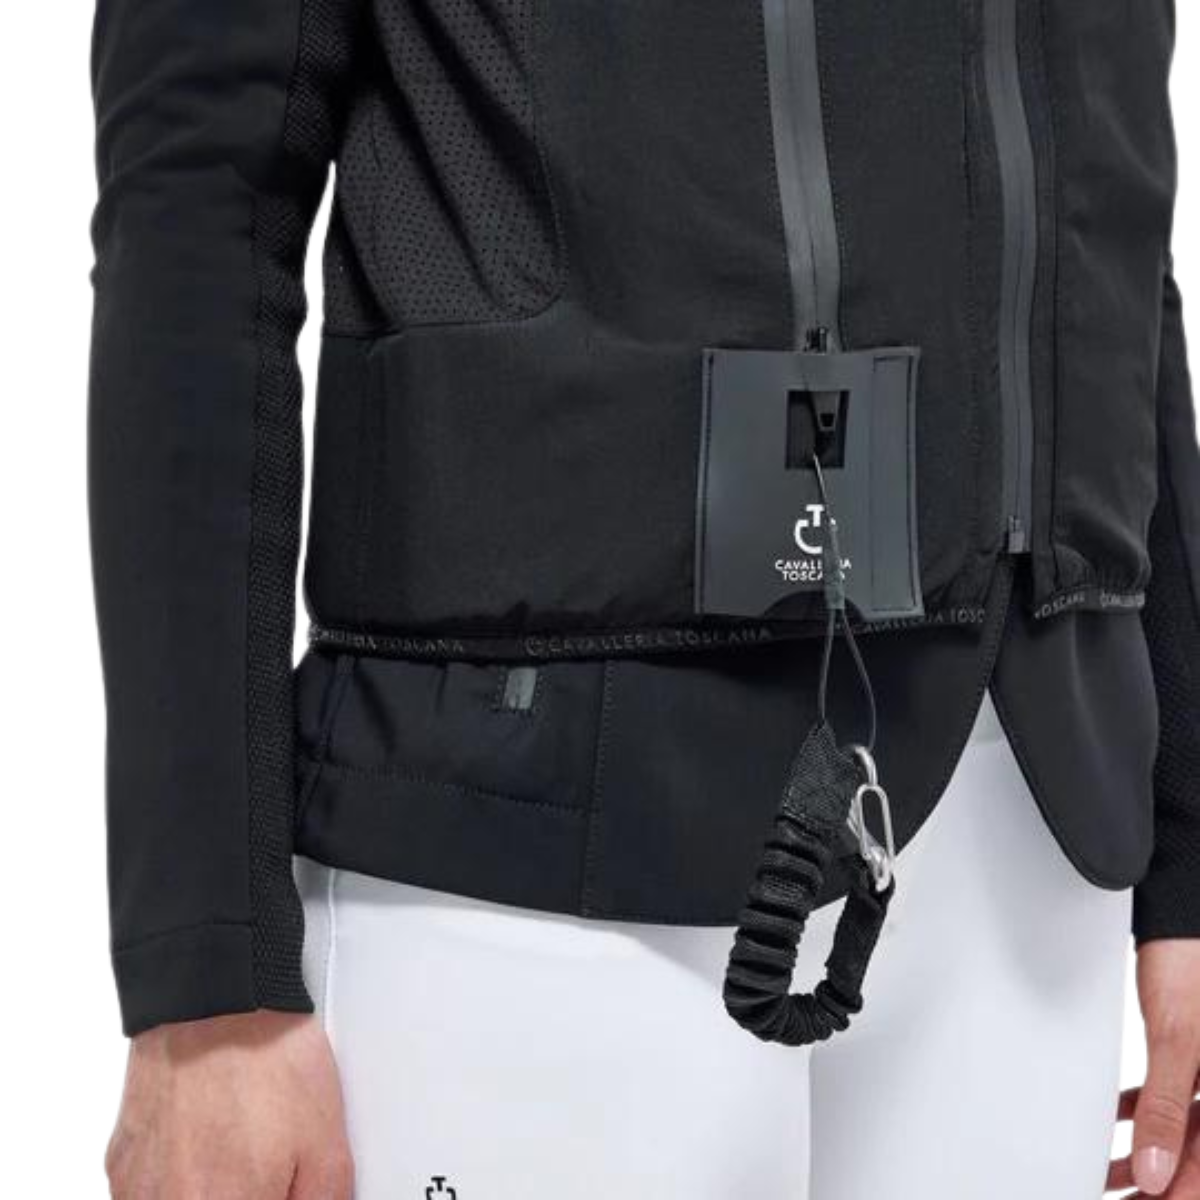 Cavalleria Toscana 'R-Evo' Air Vest in BlackCavalleria Toscana 'R-Evo' Air Vest in Black 